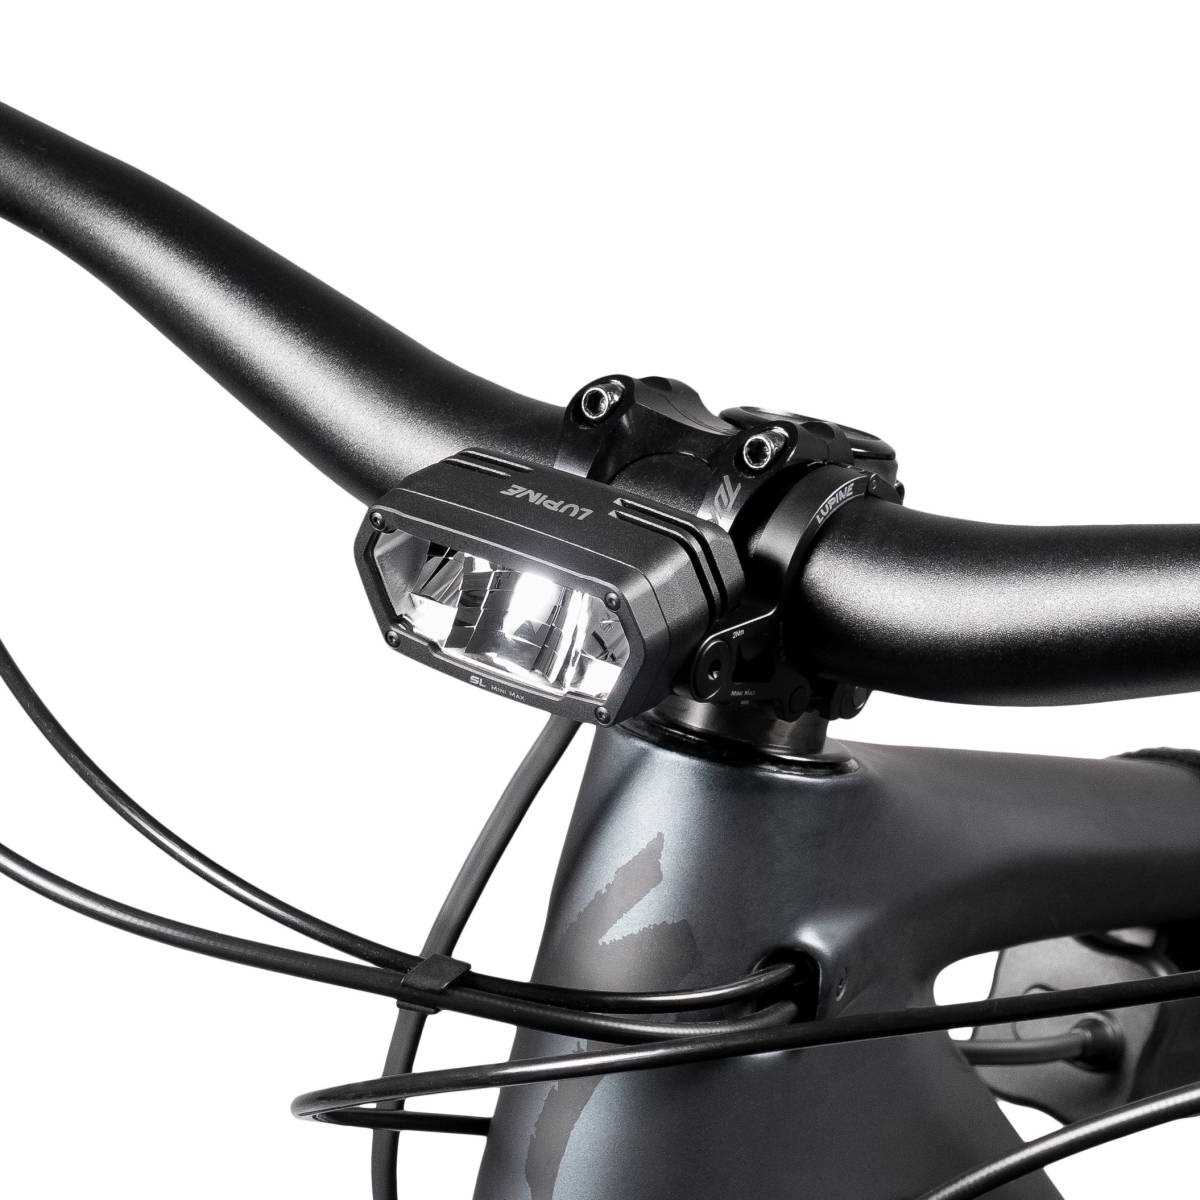 Produktbild von Lupine SL MiniMax AF, Fahrradlampe mit 2400 Lumen Fernlicht, Lenkerhalter 25.4mm, 6.9Ah SmartCore Akku + Bluetooth Fernbedienung